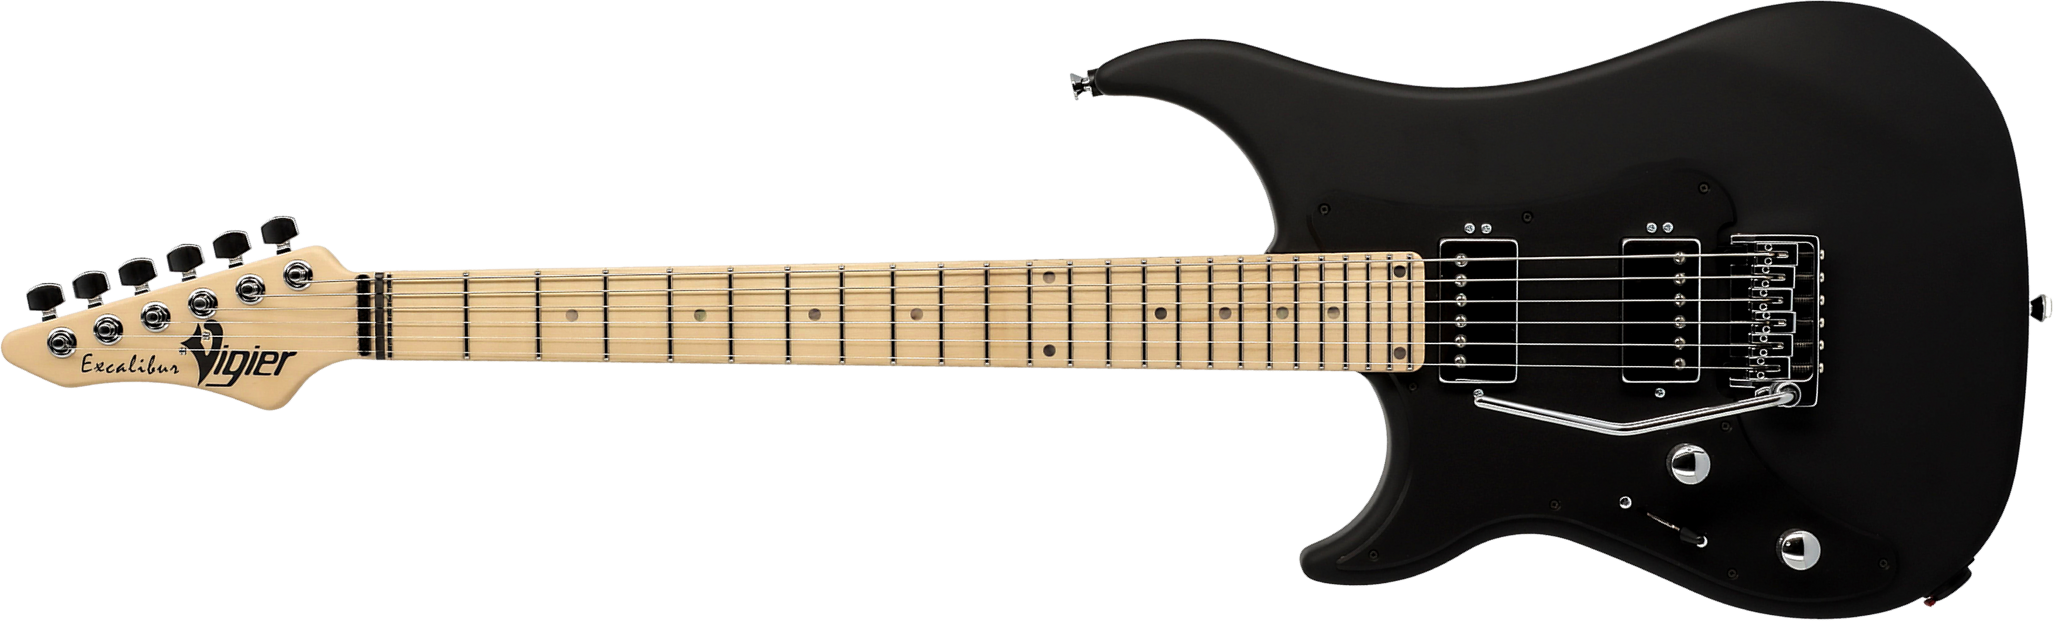 Vigier Excalibur Indus Lh Gaucher 2h Trem Mn - Textured Black - Linkshandige elektrische gitaar - Main picture